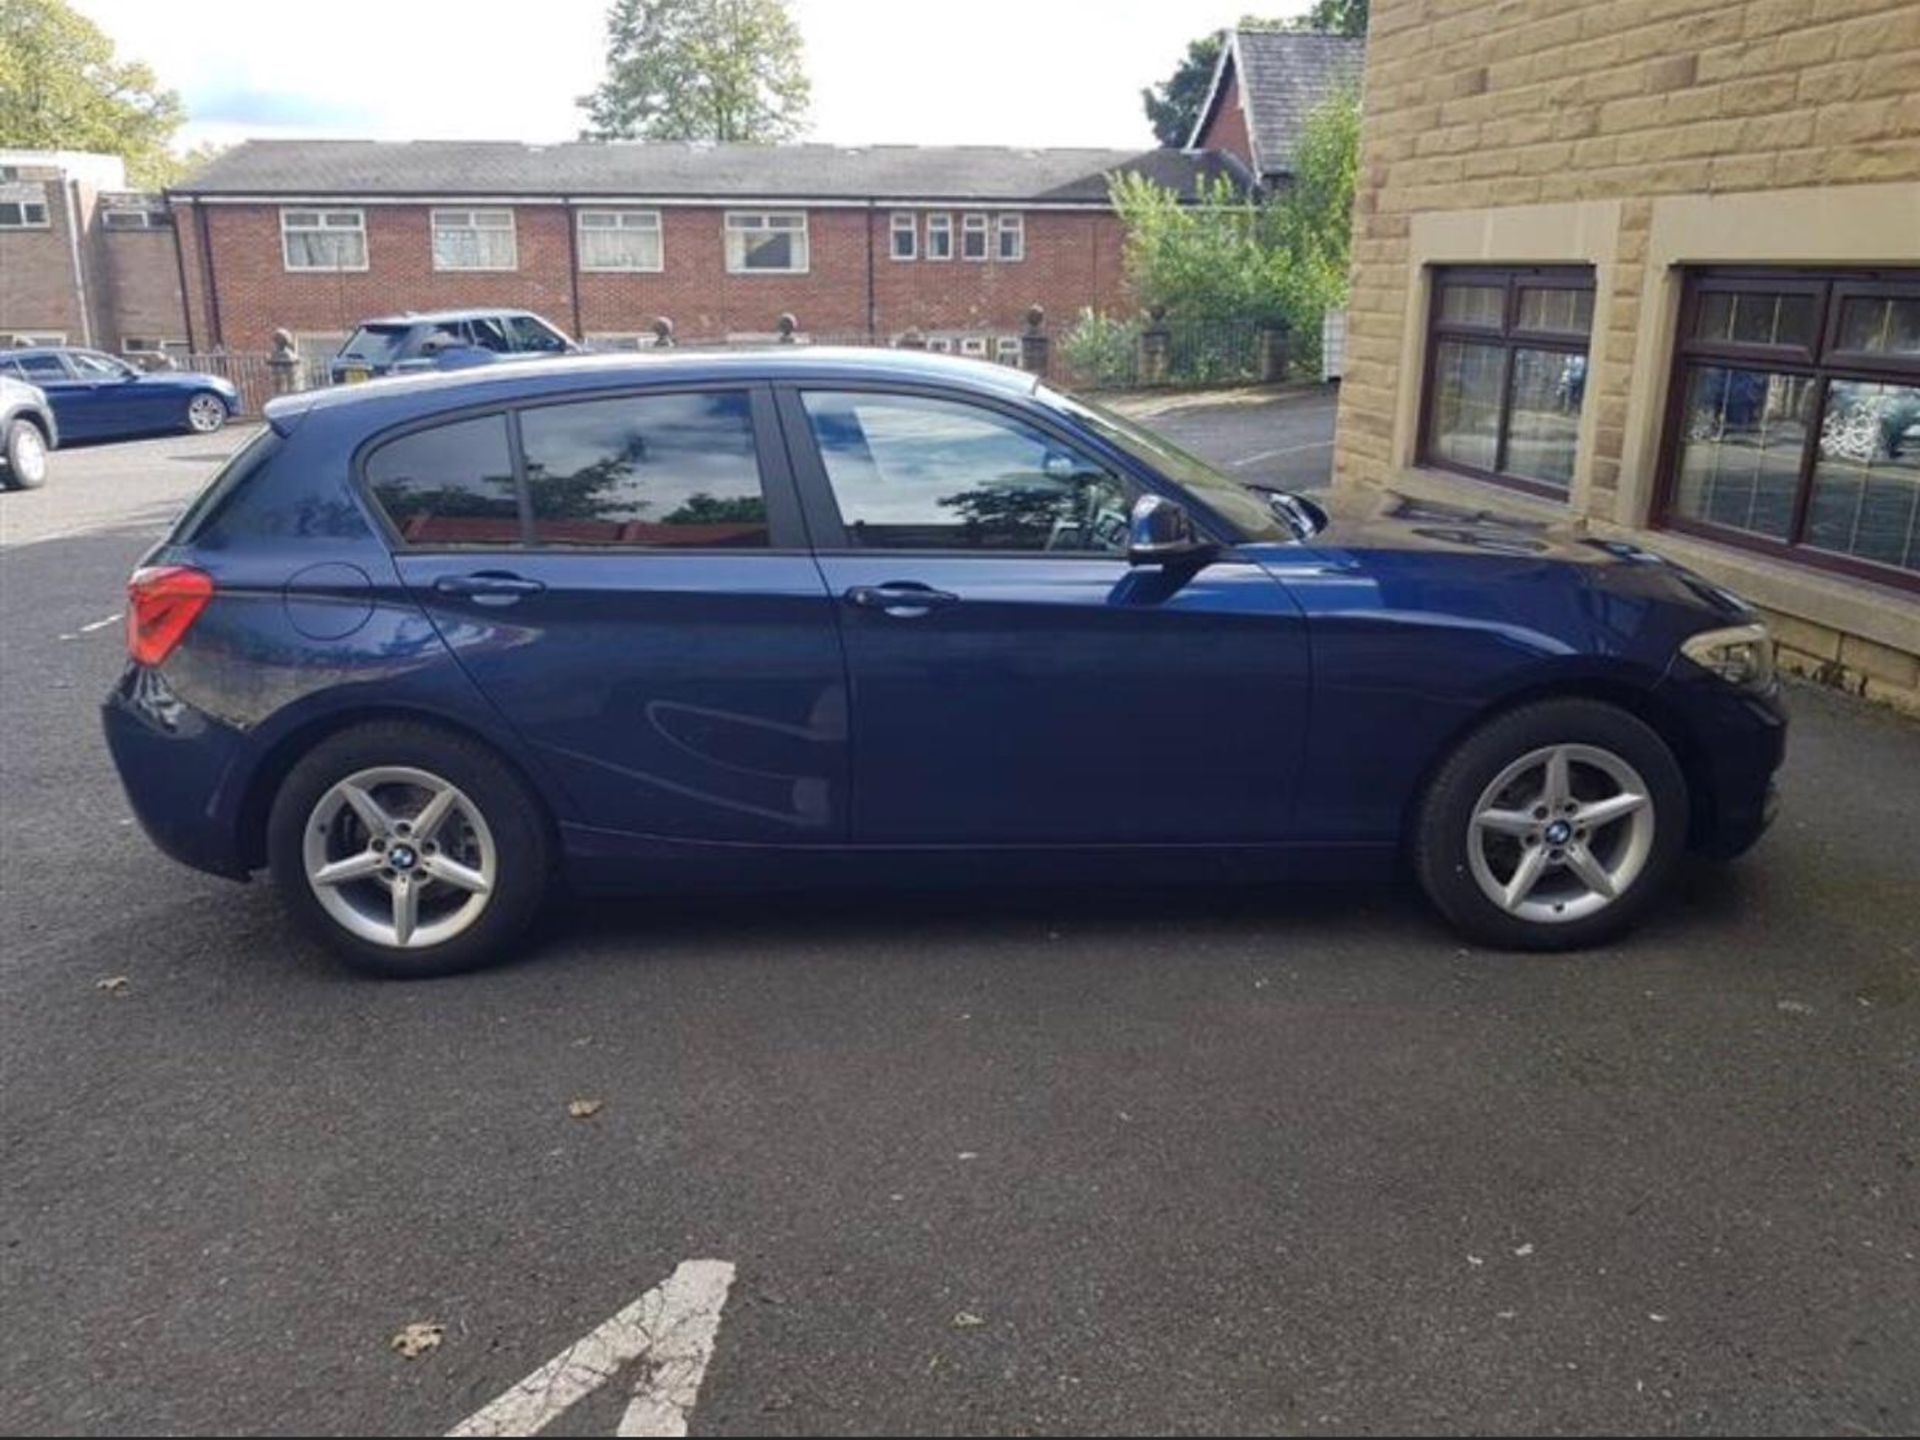 2018/67 REG BMW 118D SE AUTOMATIC BLUE DIESEL 5 DOOR HATCHBACK, SHOWING 0 FORMER KEEPERS *PLUS VAT* - Image 8 of 18